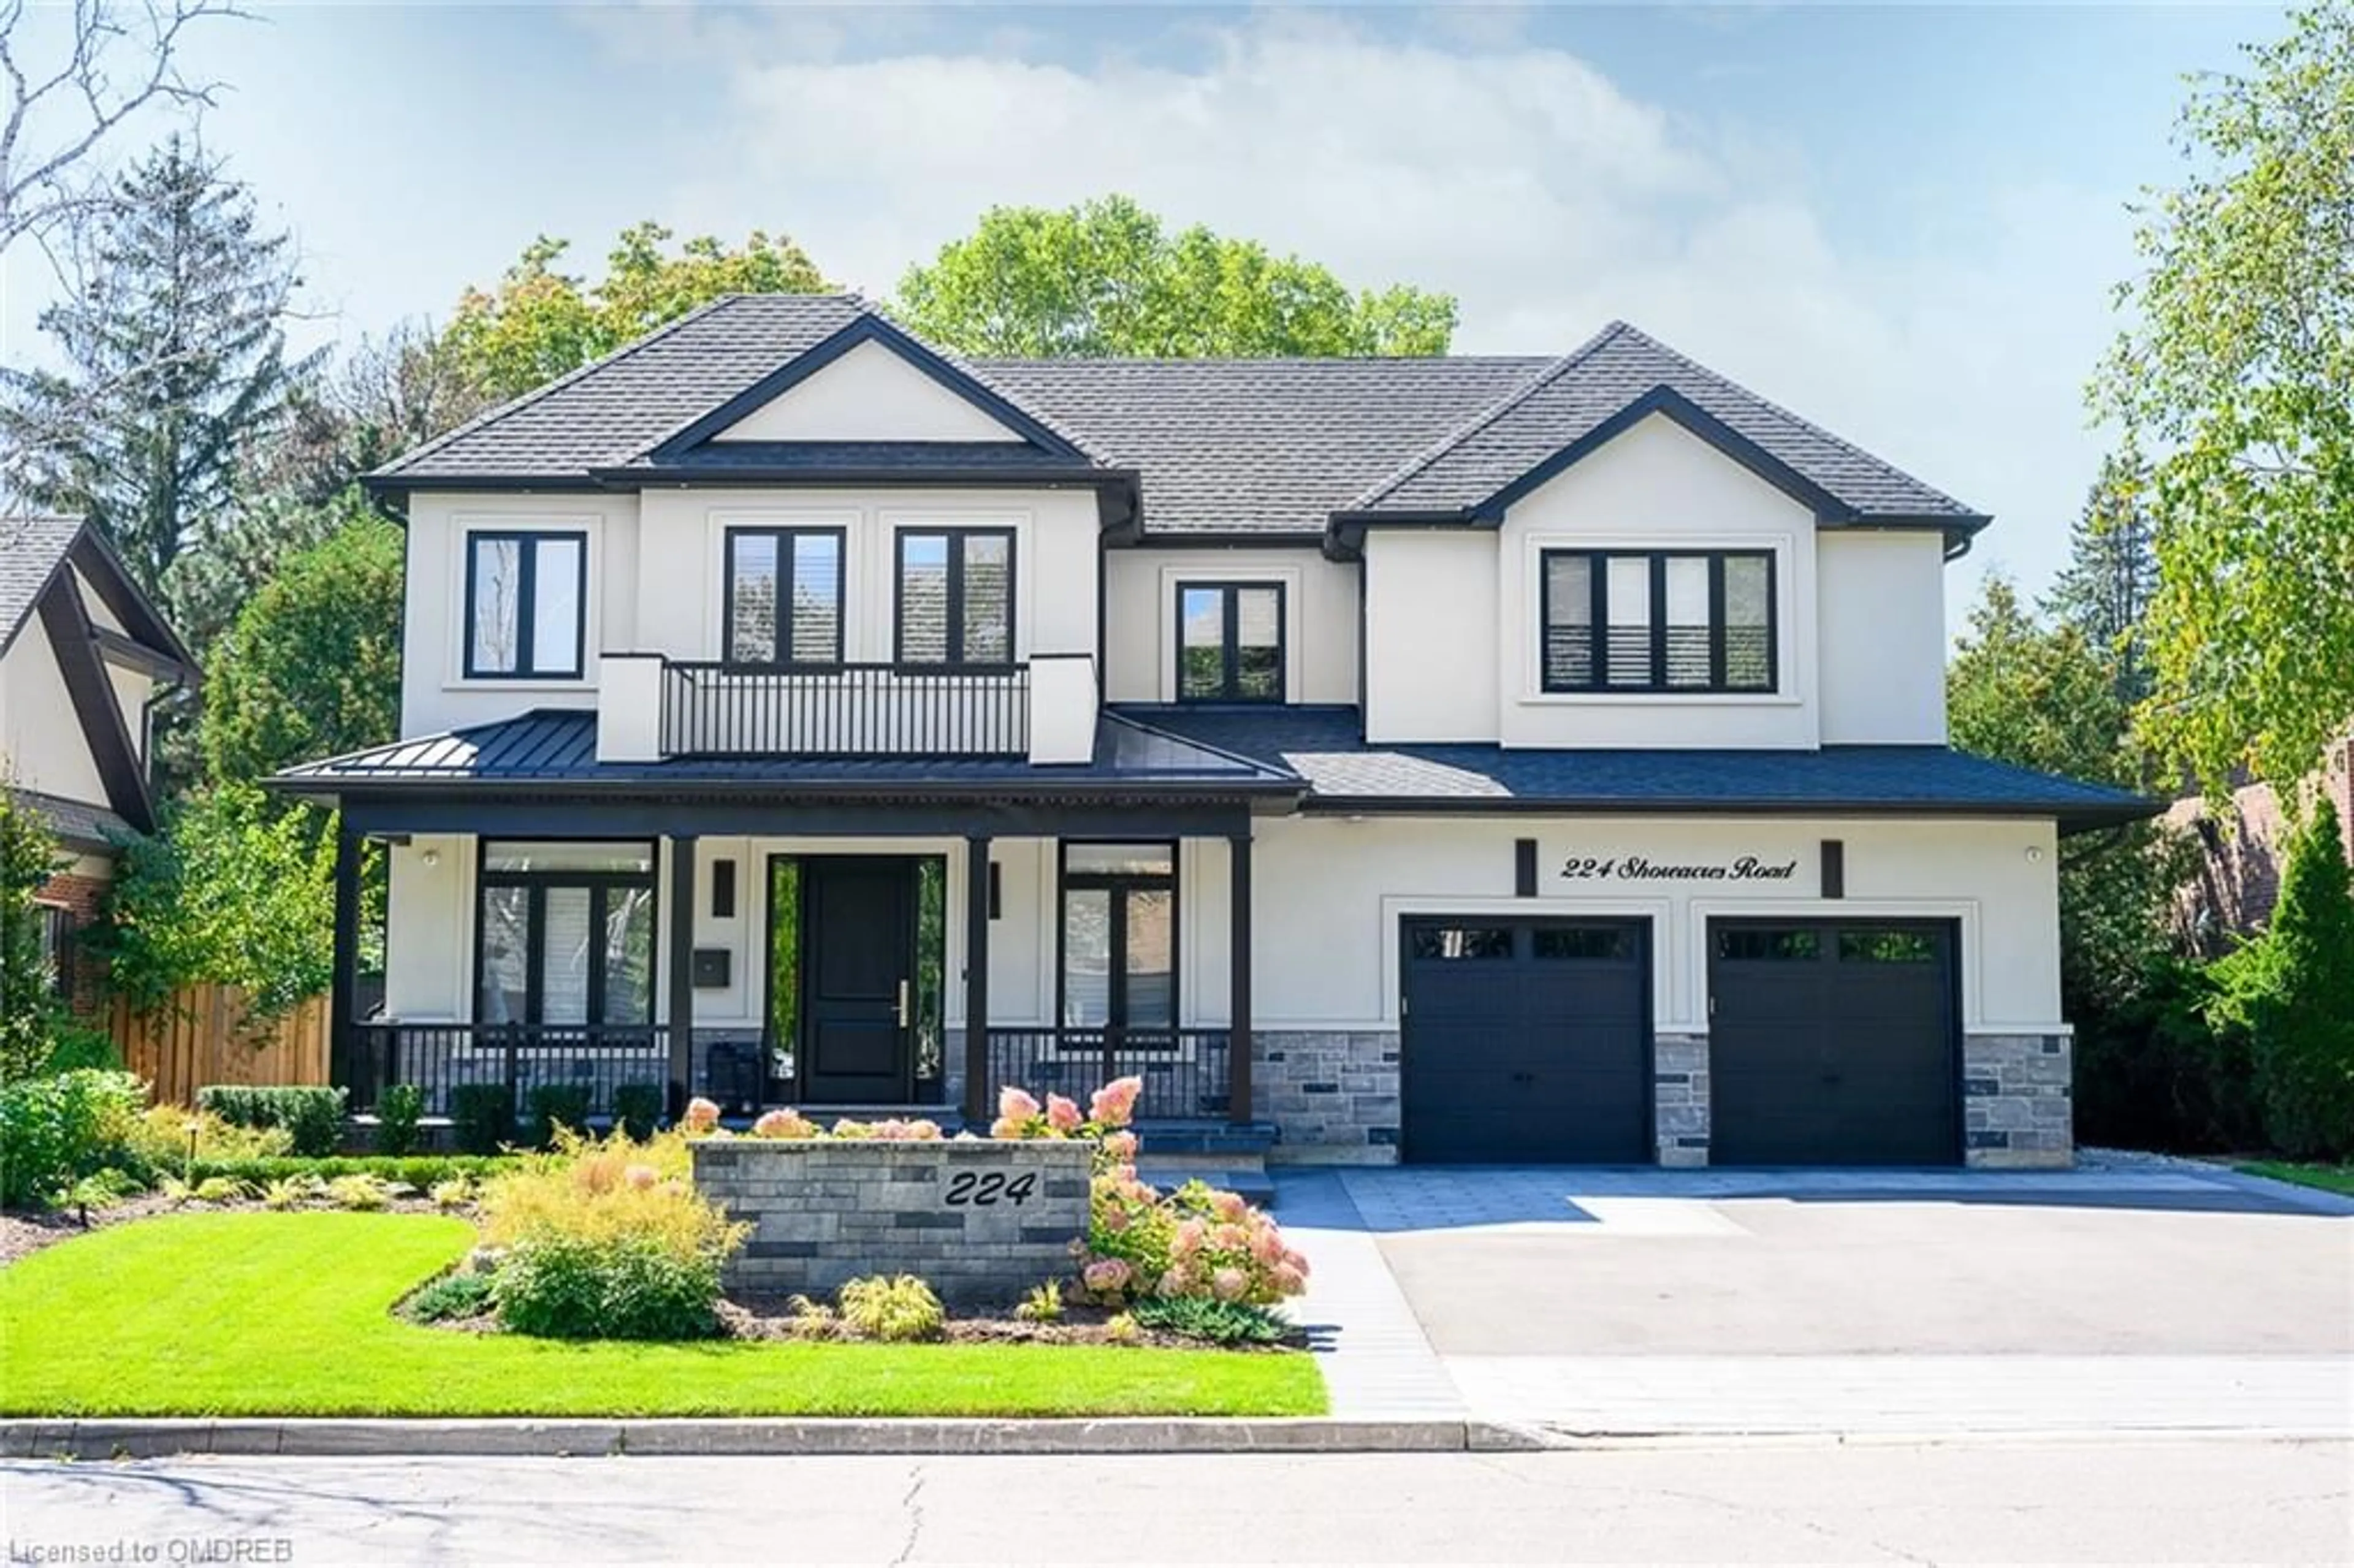 Frontside or backside of a home for 224 Shoreacres Rd, Burlington Ontario L7L 2H2